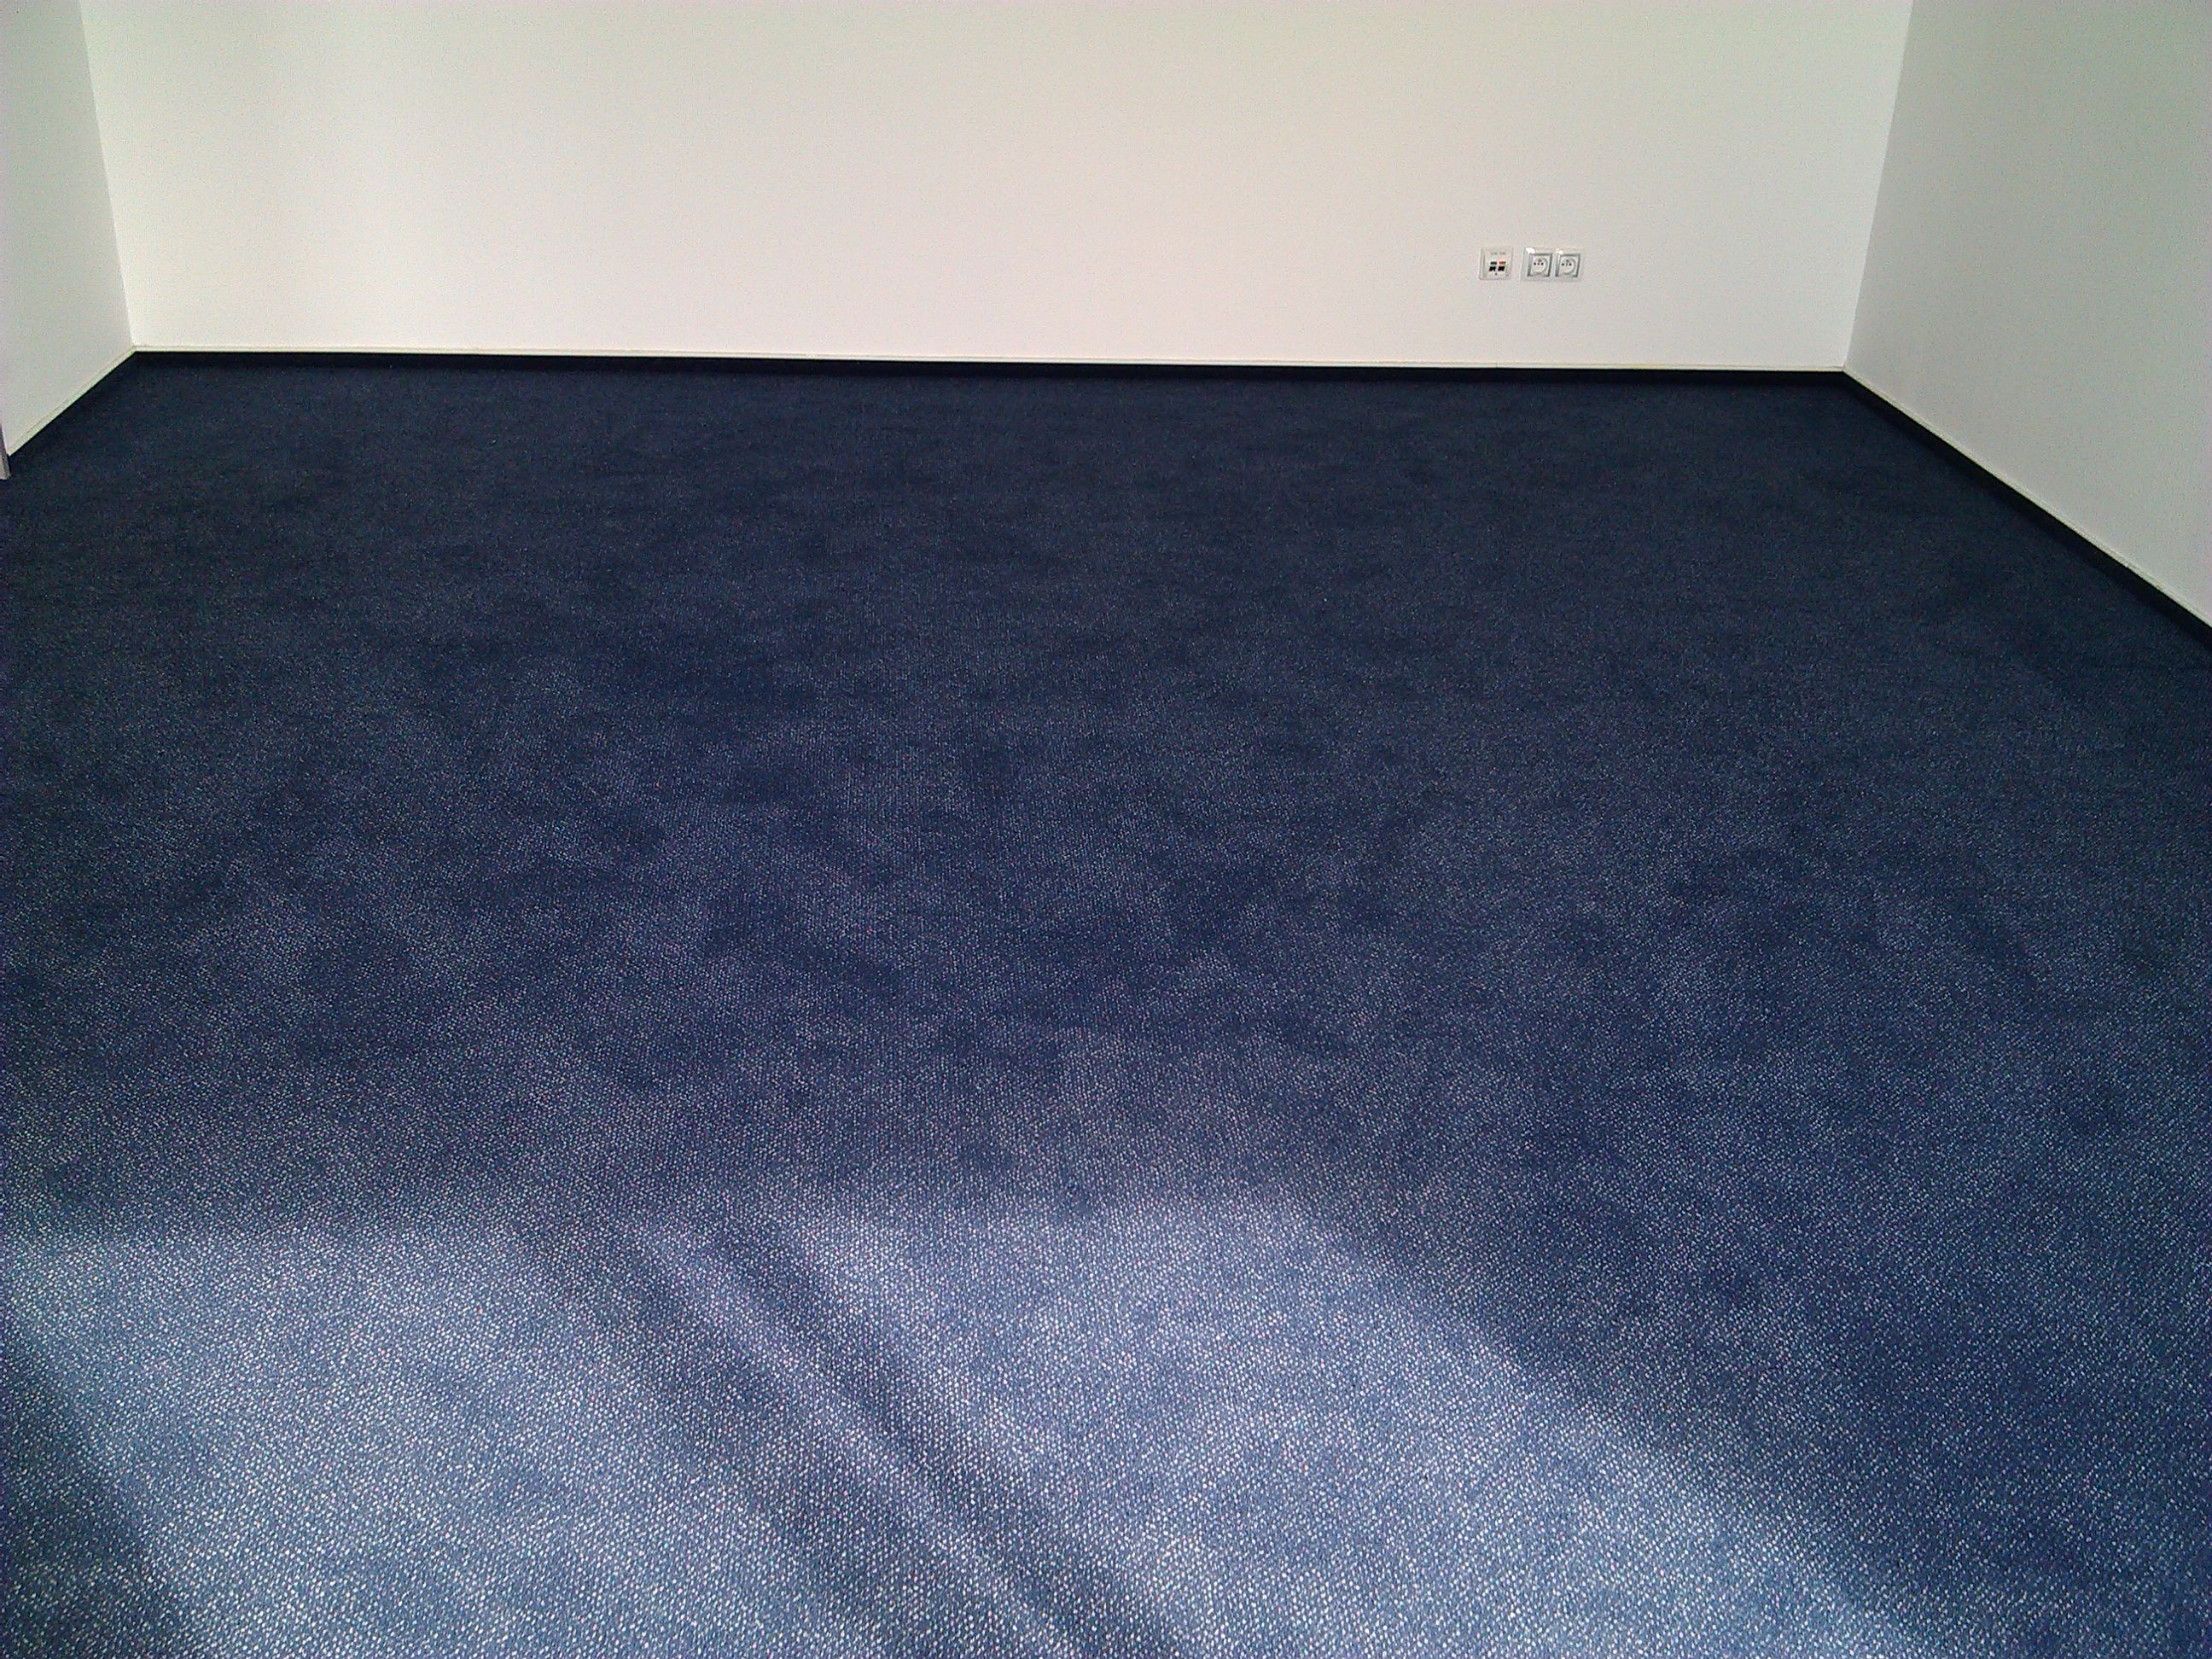 Zátěžový střižený koberec - firma RONAL, Pardubice